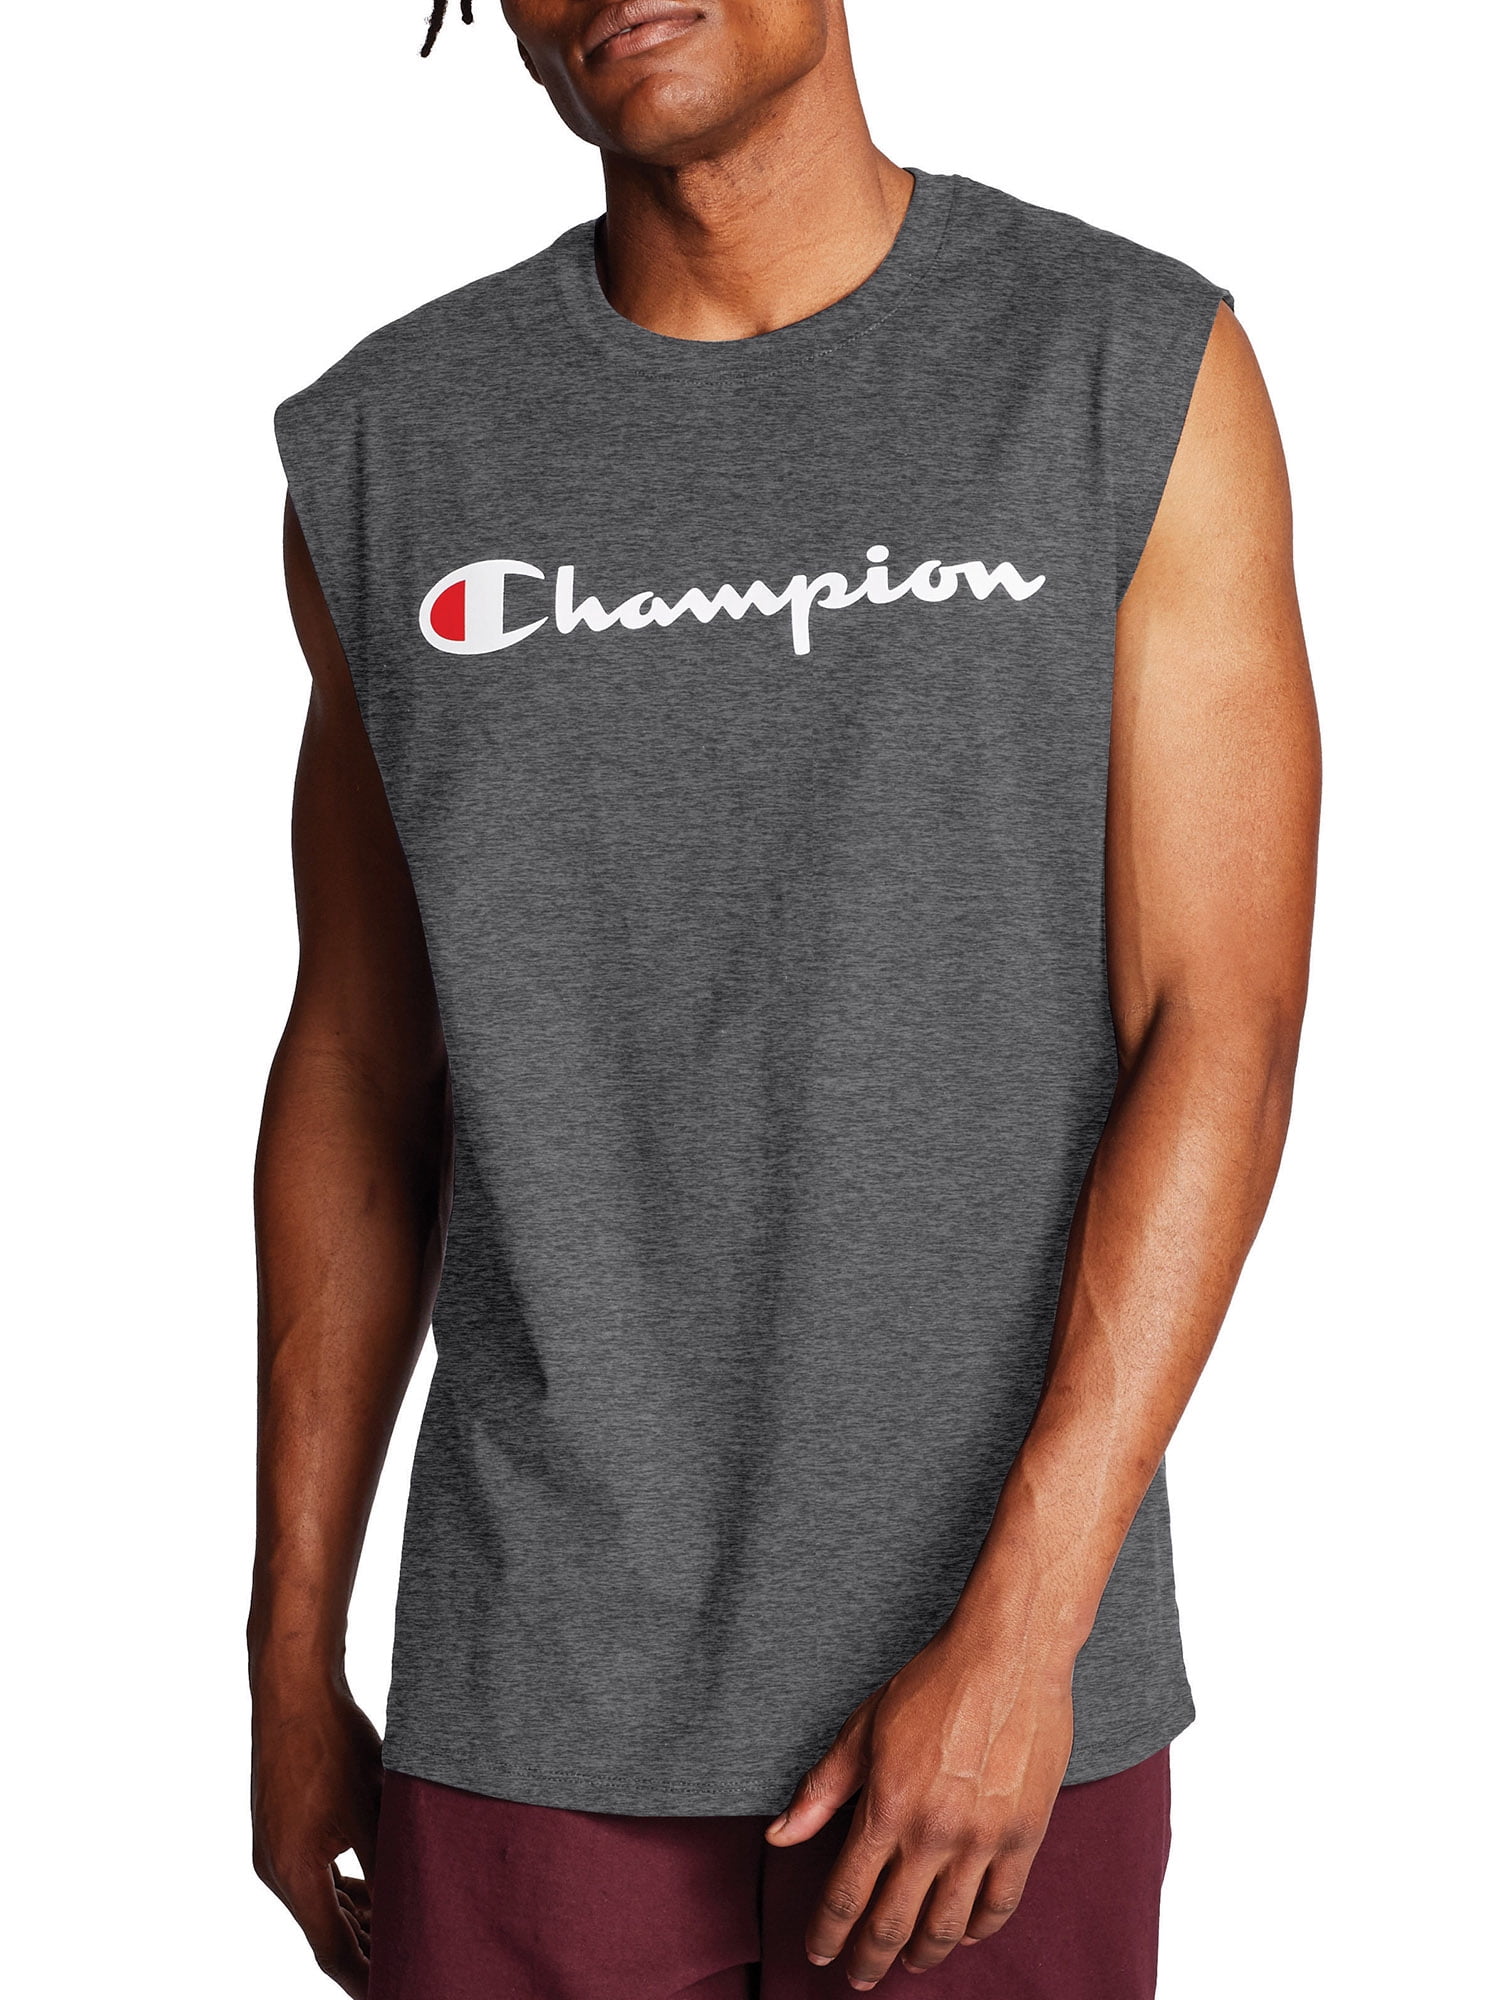 champion muscle shirt